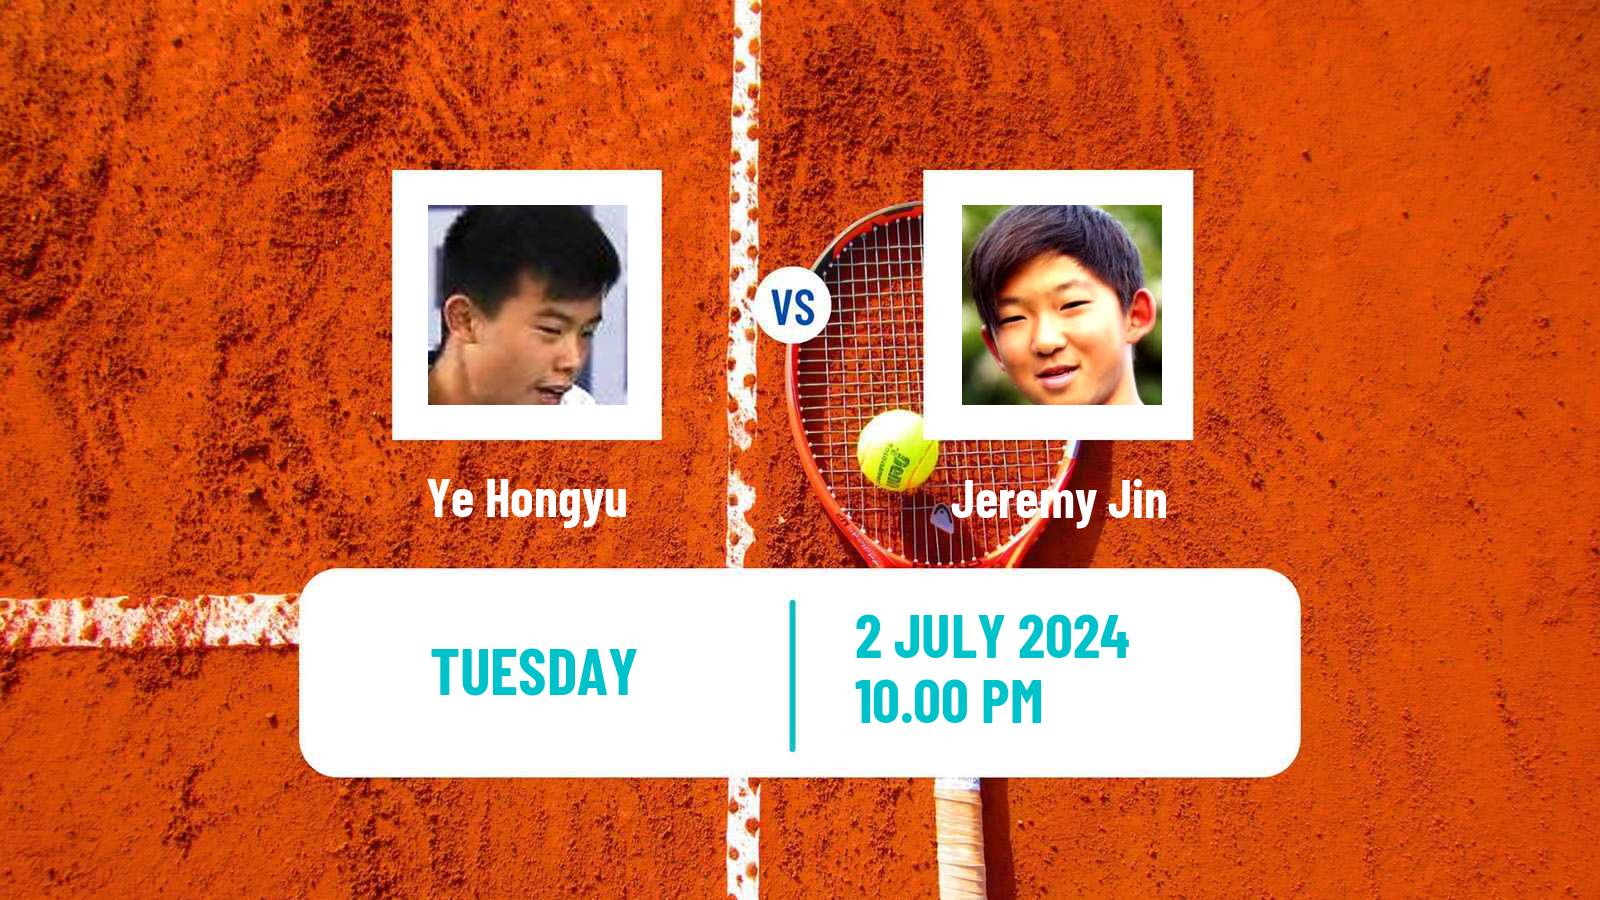 Tennis ITF M15 Tianjin 2 Men Ye Hongyu - Jeremy Jin